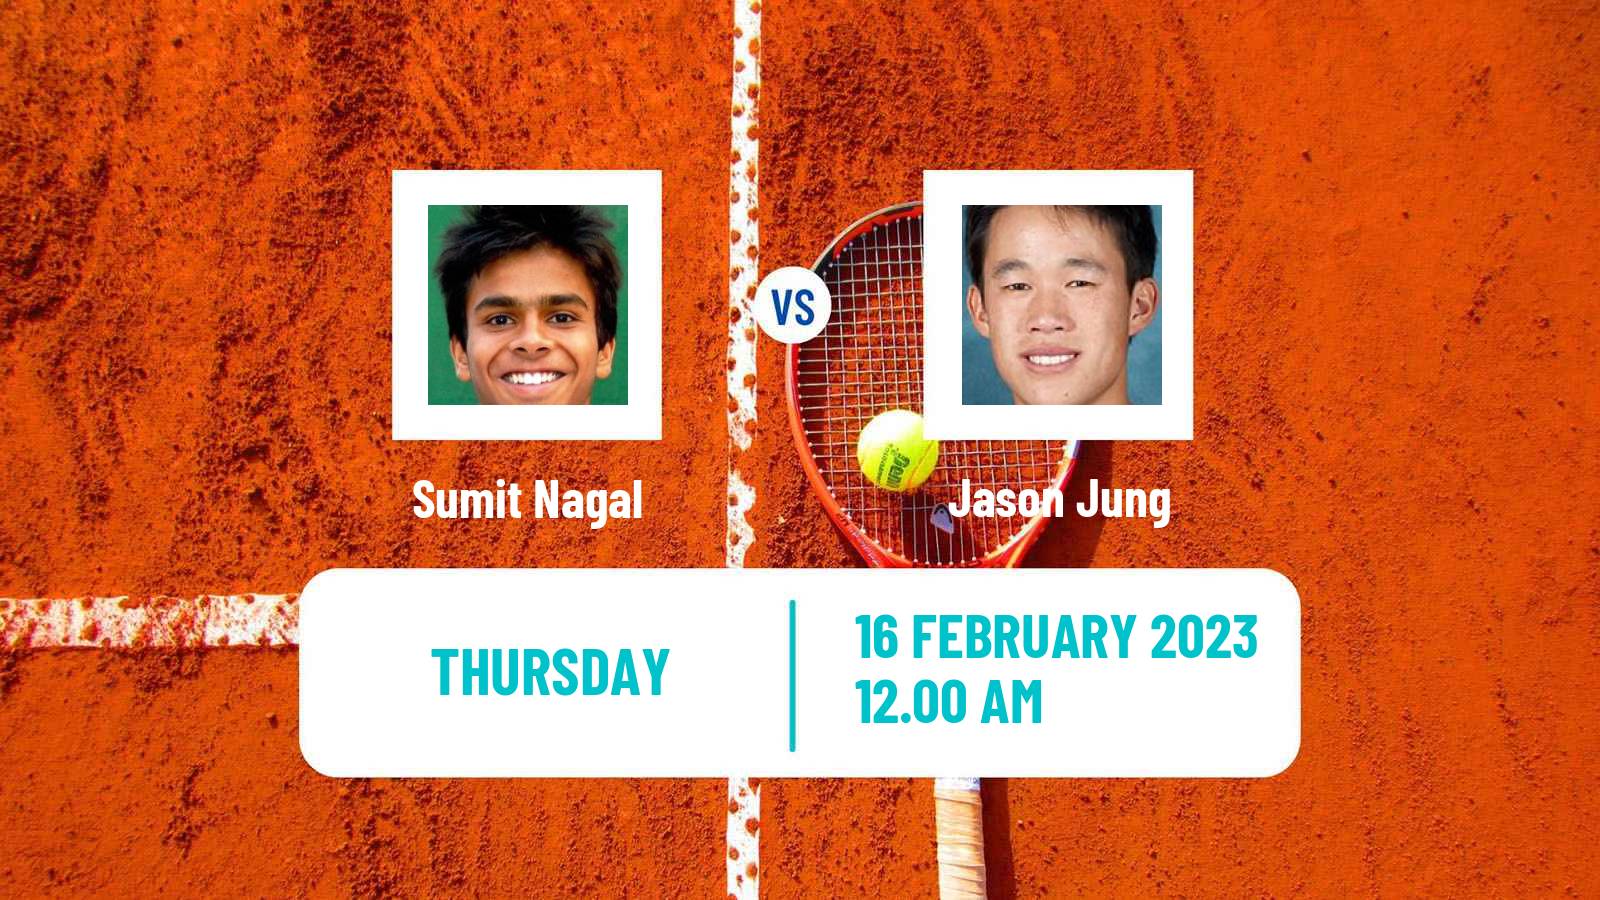 Tennis ATP Challenger Sumit Nagal - Jason Jung